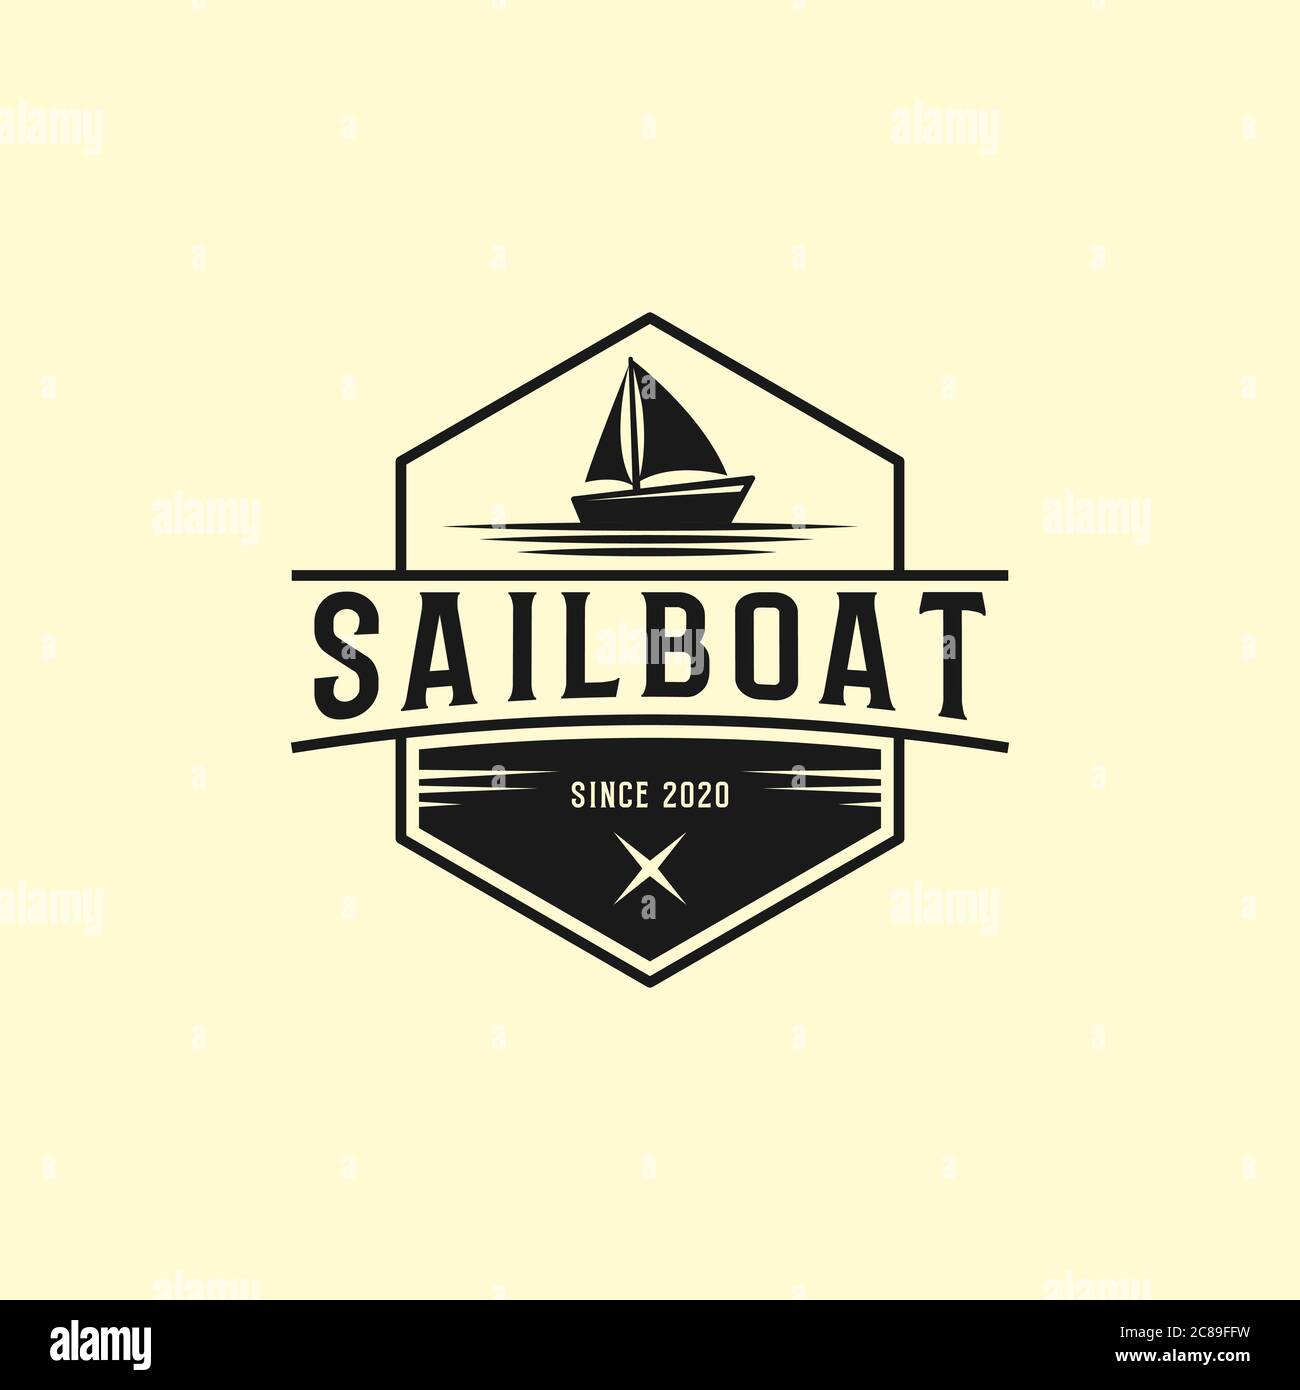 Disegni creativi del logo della barca a vela, illustrazioni vettoriali del logo degli yacht club Illustrazione Vettoriale